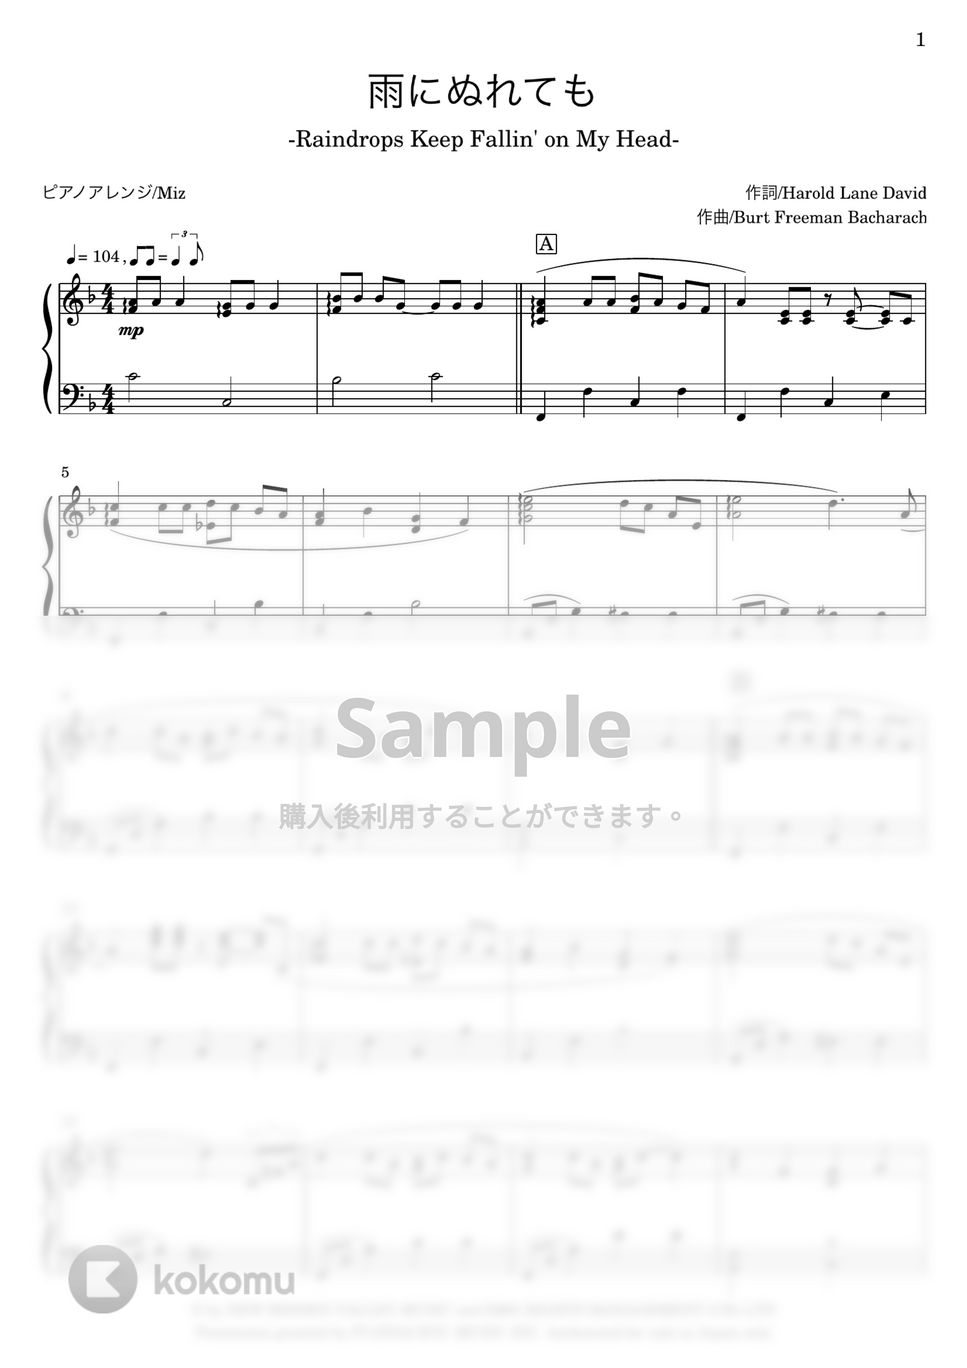 B. J. Thomas - 雨にぬれても (ピアノソロ) by Miz